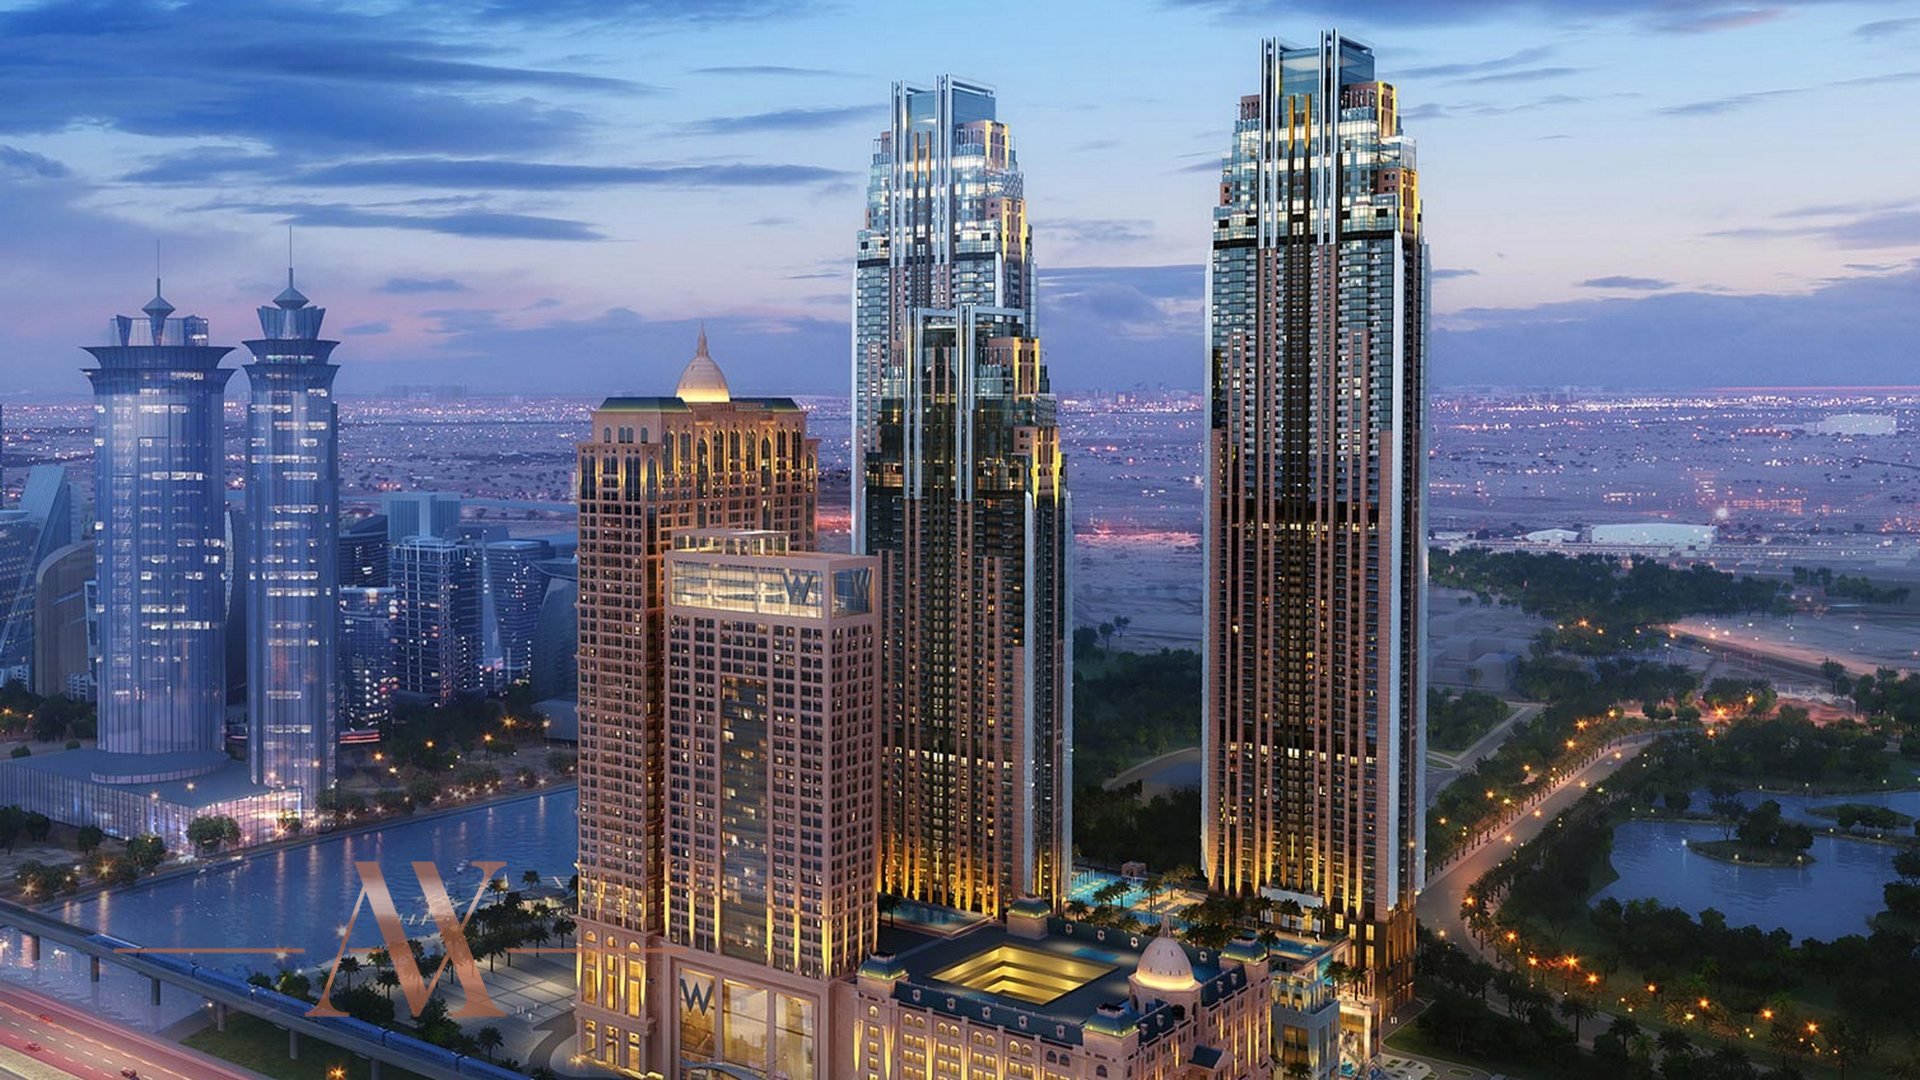 AL HABTOOR CITY by Al Habtoor Group in Business Bay, Dubai, UAE